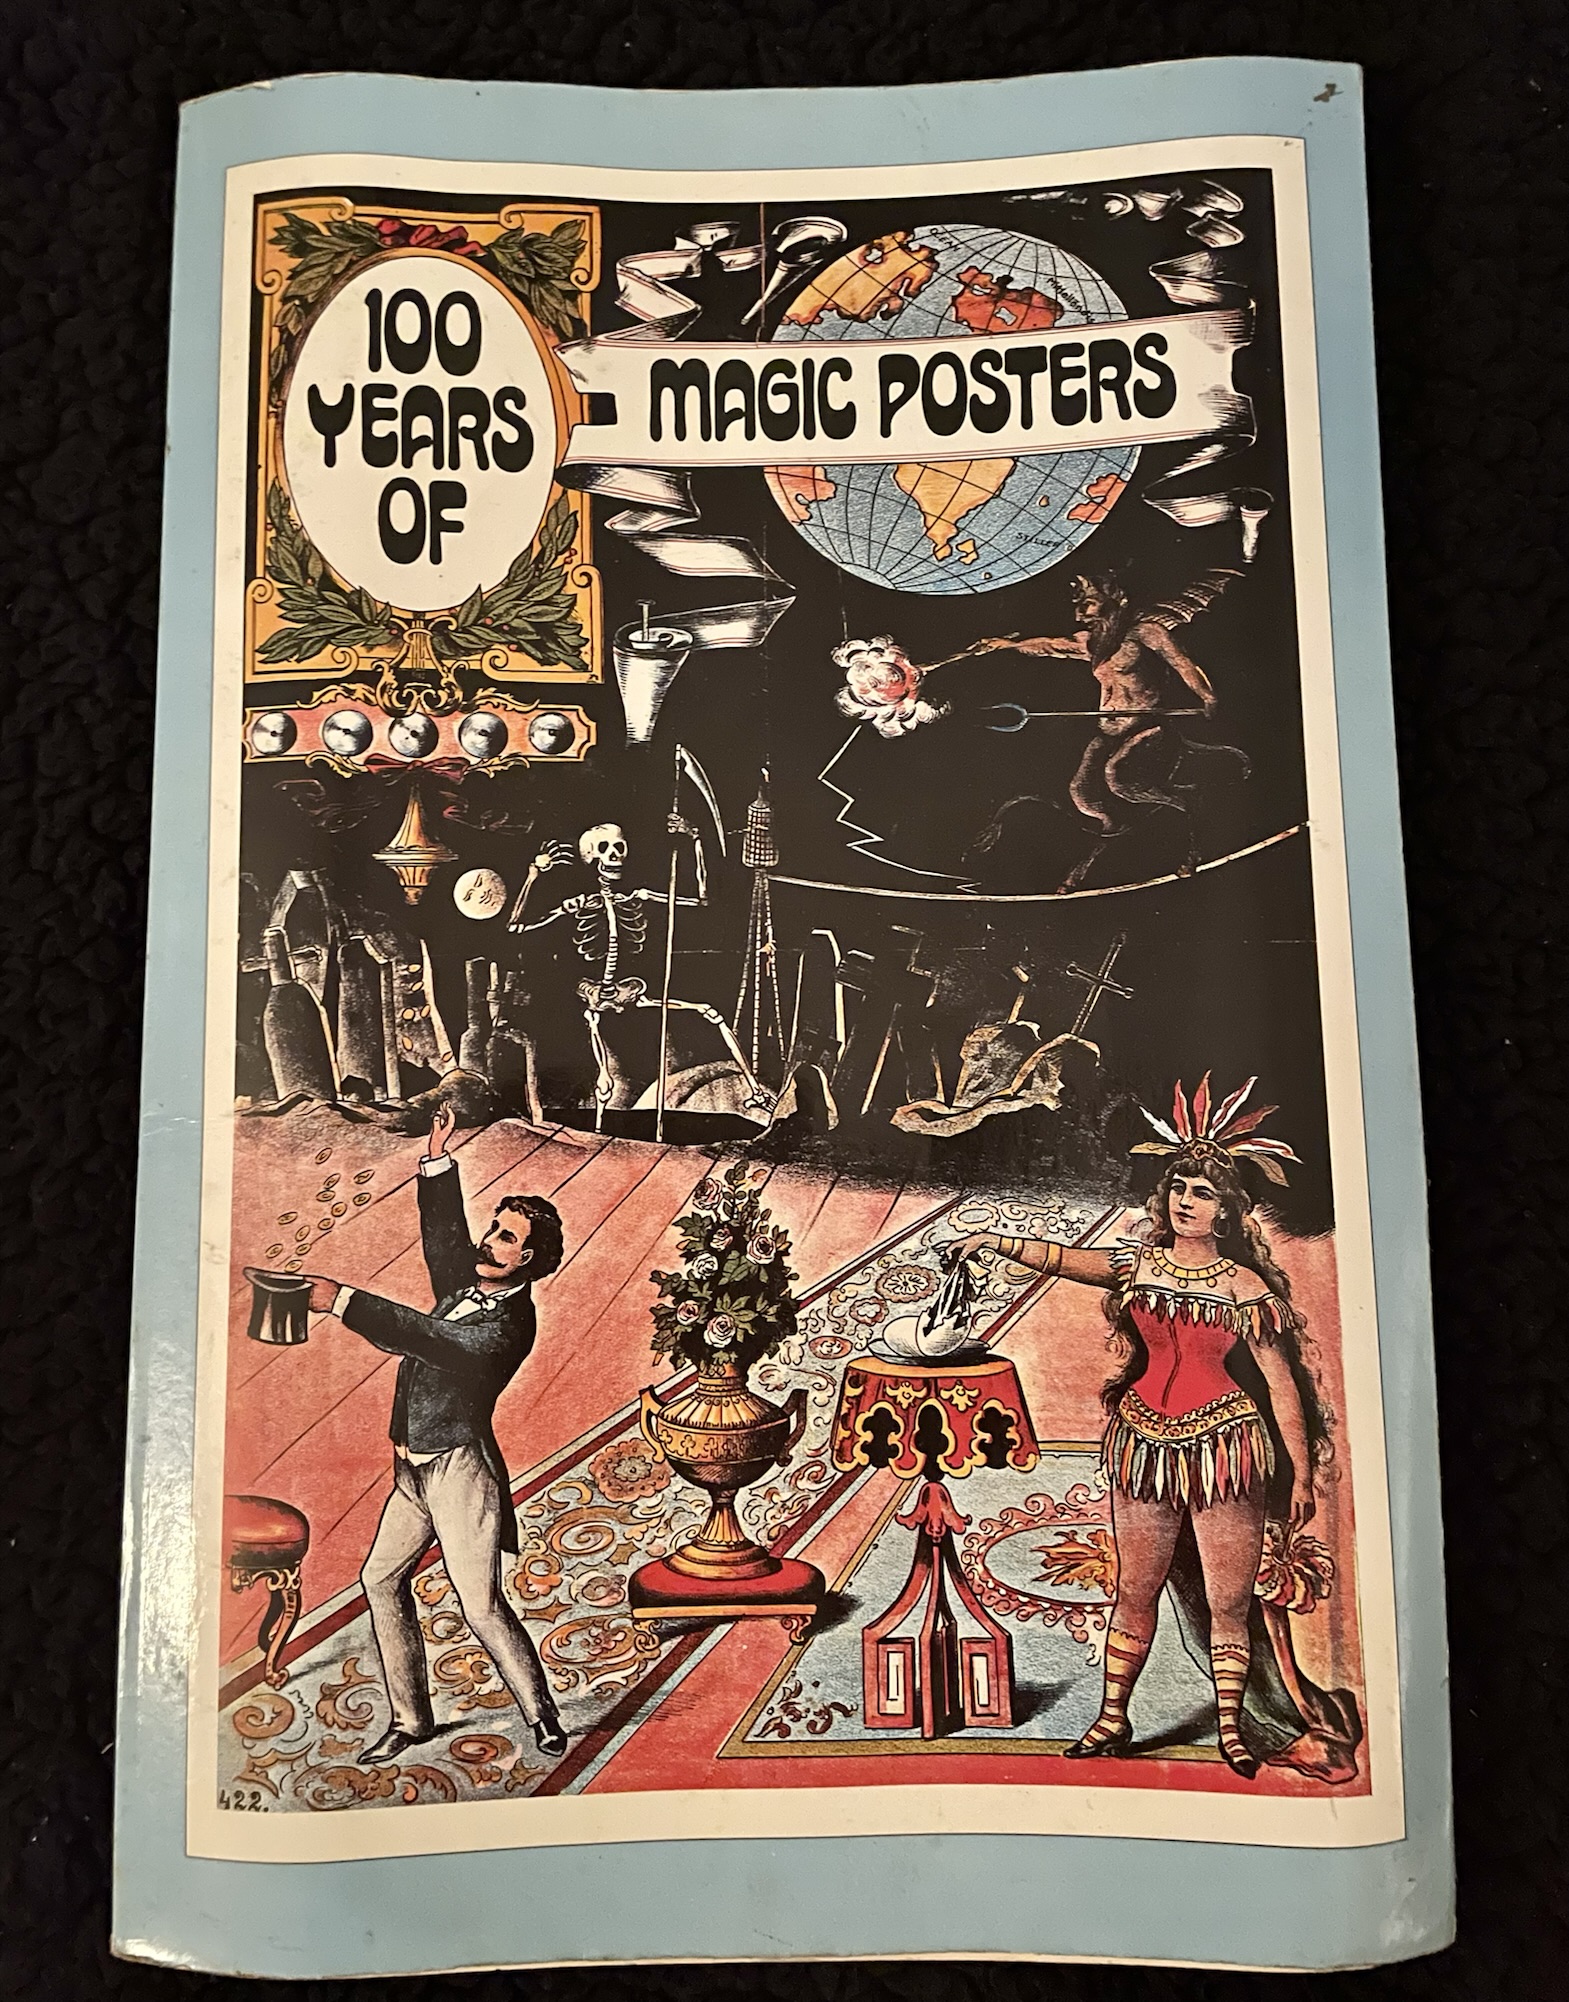 https://0201.nccdn.net/1_2/000/000/0d1/649/100-years-of-magic-posters-book.jpeg